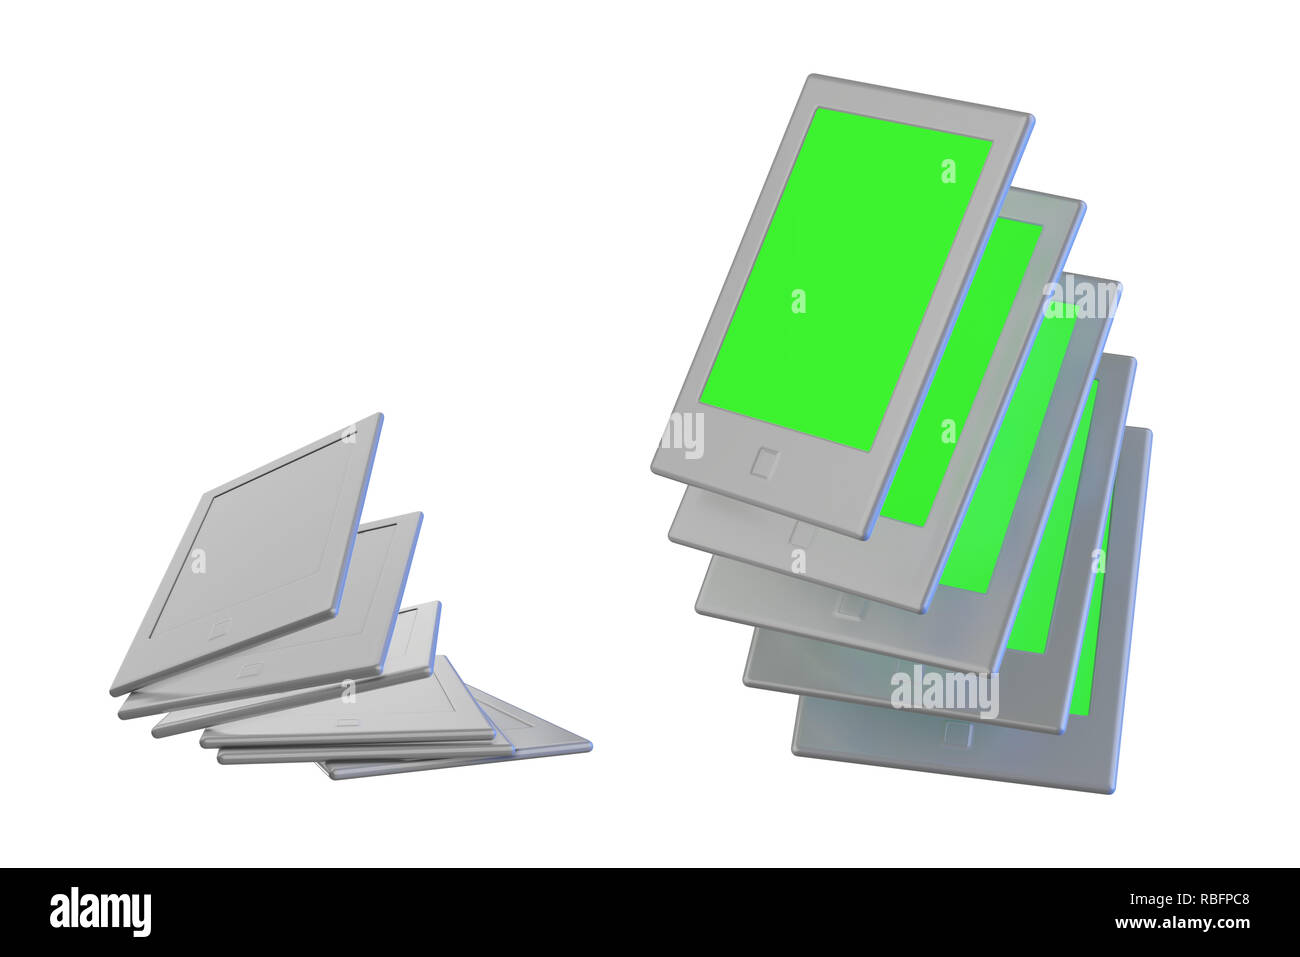 Gruppo di elettronica moderna libri tascabili, isolato su bianco con greenscreen immagine e copyspace mockup 3d illustrazione Foto Stock